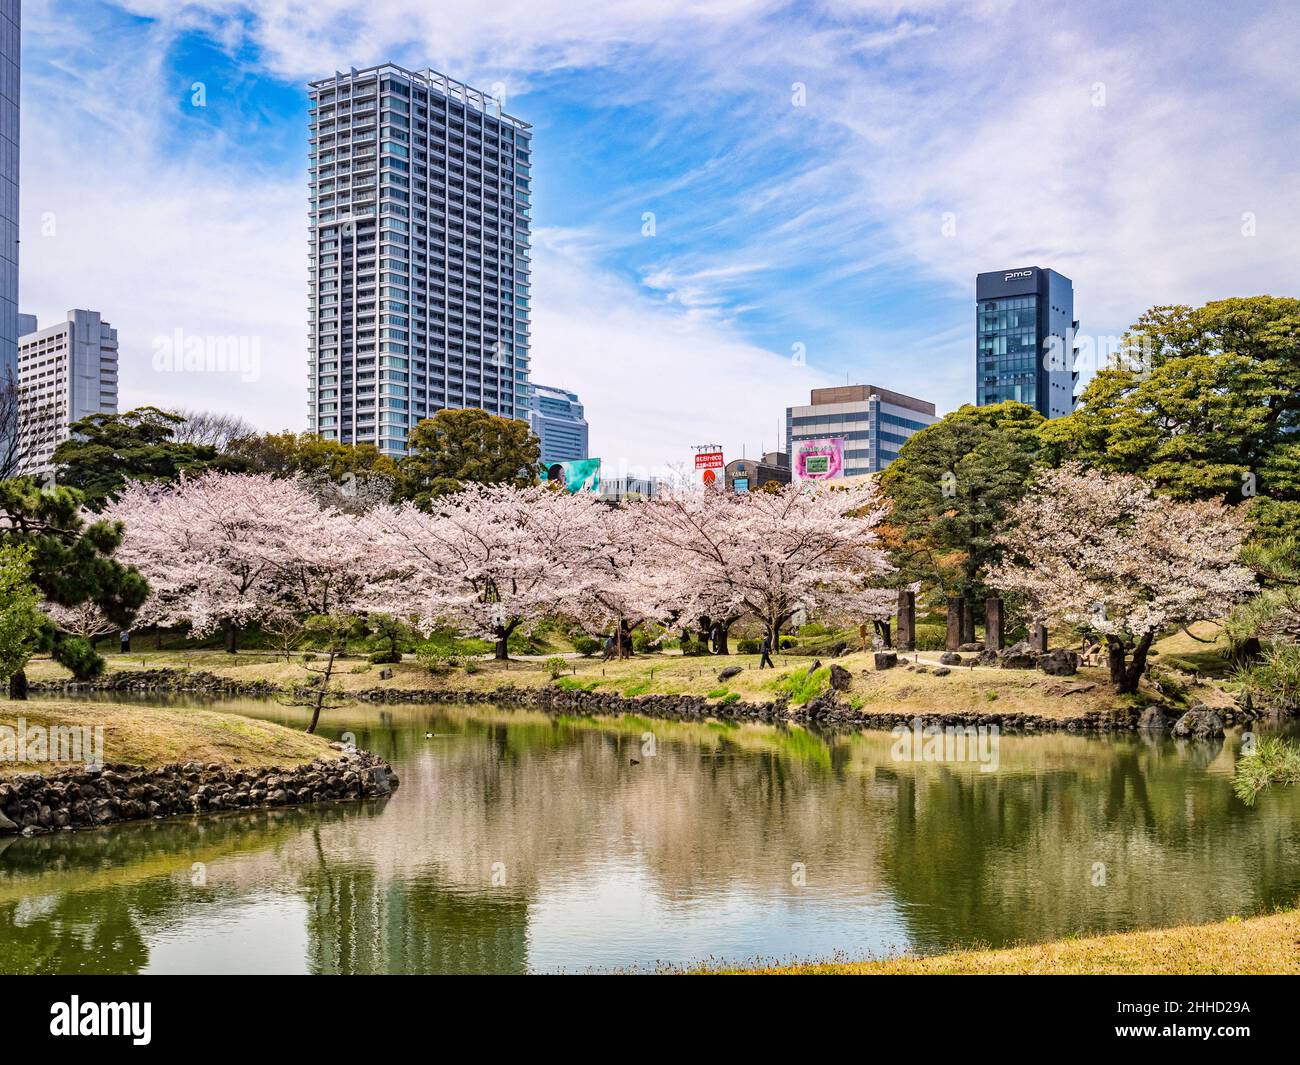 5 Aprile 2019: Tokyo, Giappone - Lago e ciliegia fioriscono nei Giardini Kyu-Shiba-rikyu, un giardino paesaggistico in stile tradizionale nel centro di Tokyo. Foto Stock